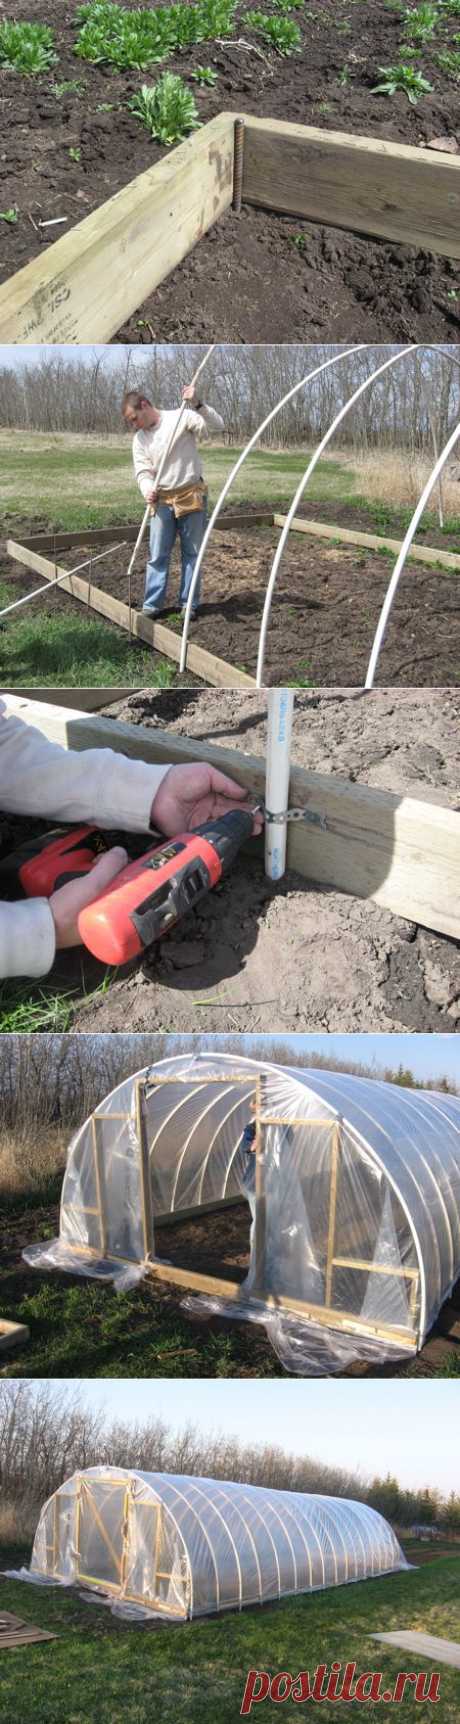 Как самостоятельно построить недорогую теплицу из пластиковых труб | vparnike.ru